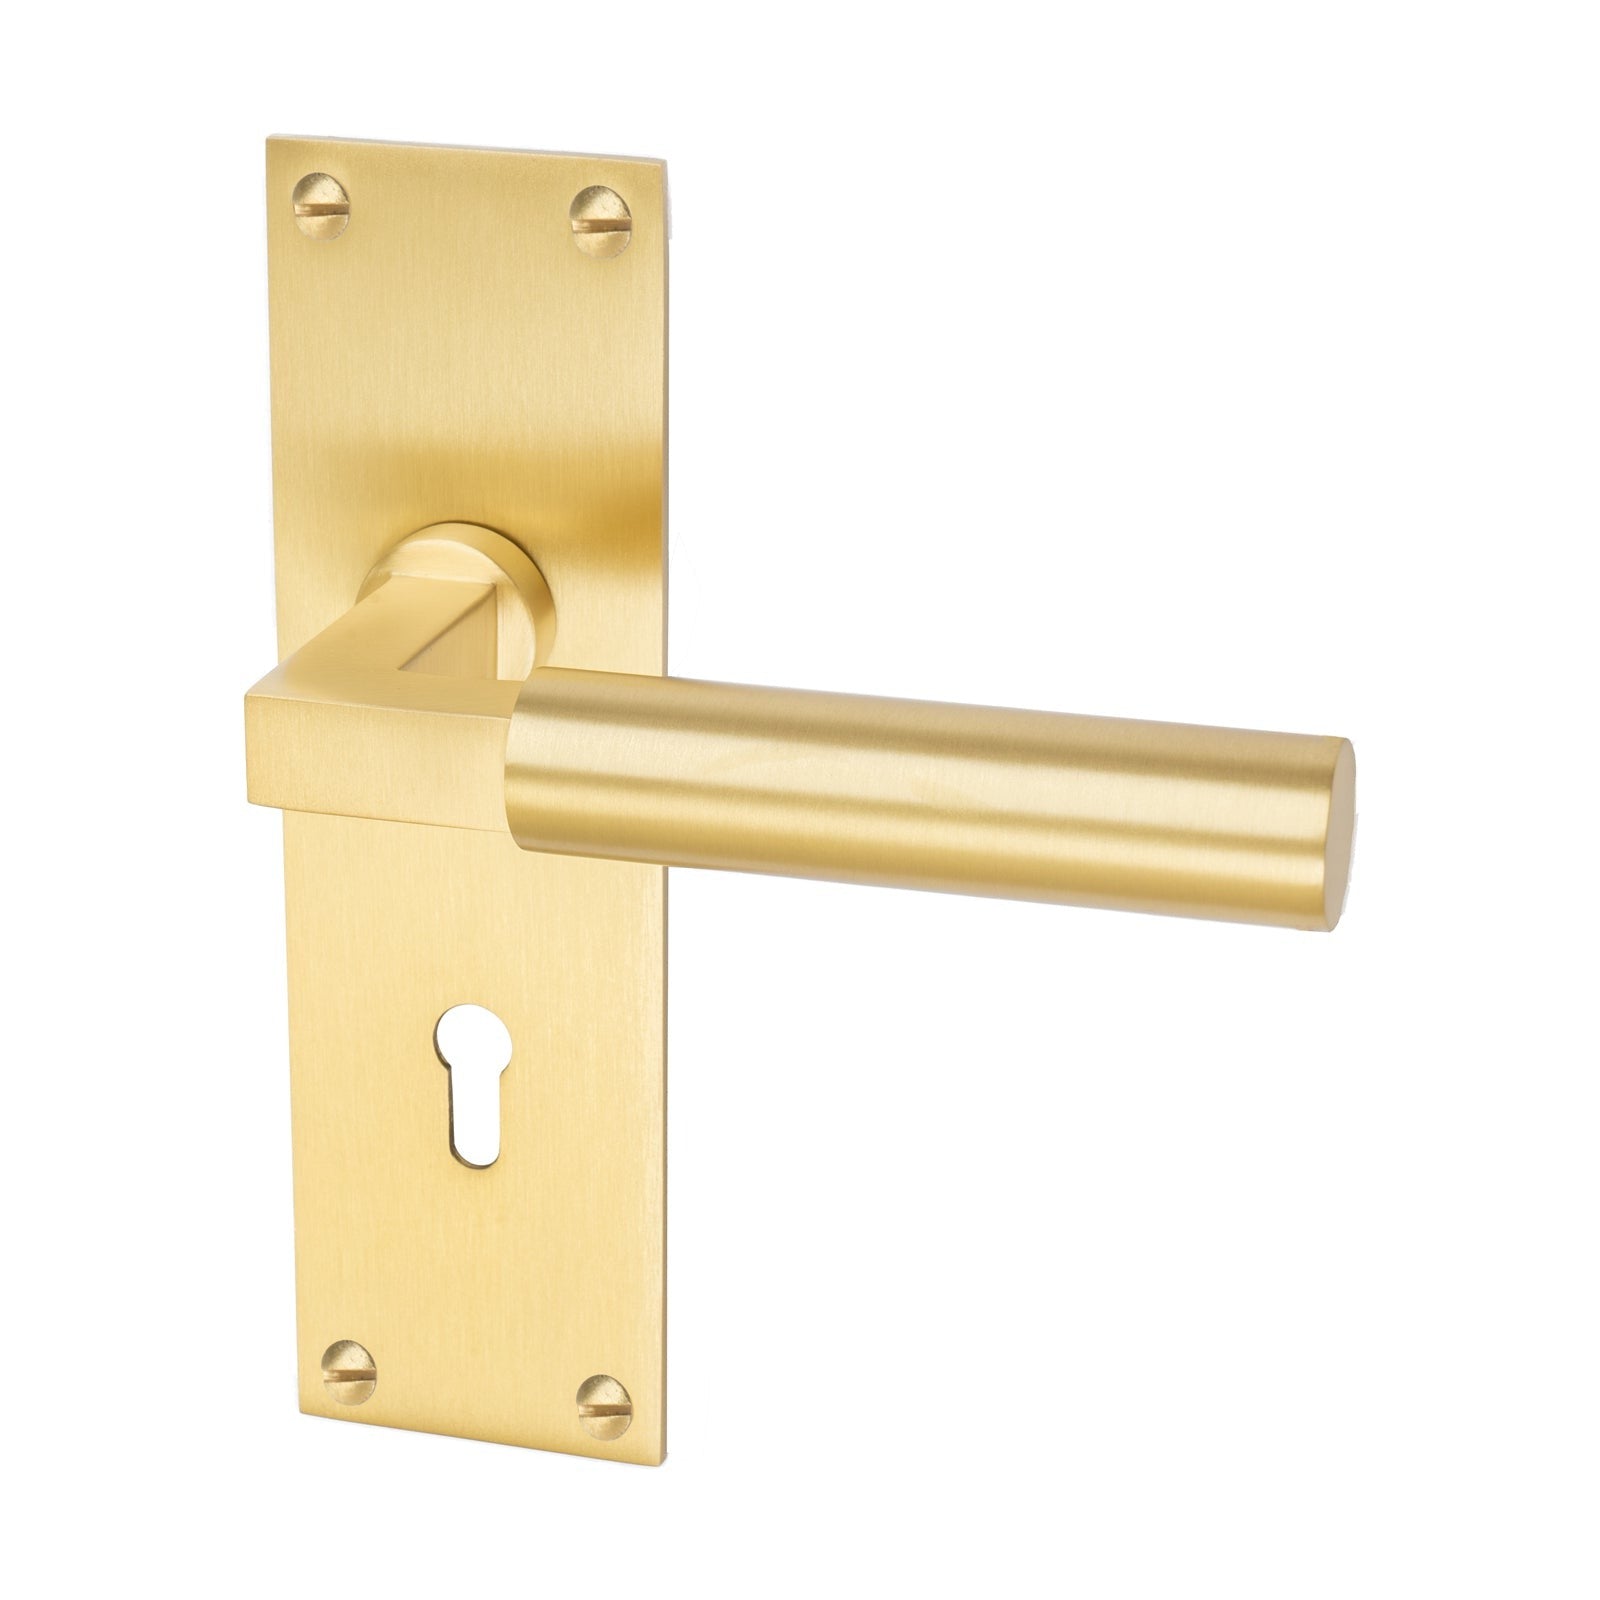 Bauhaus Door Handles On Plate Lock Handle in Satin Brass 